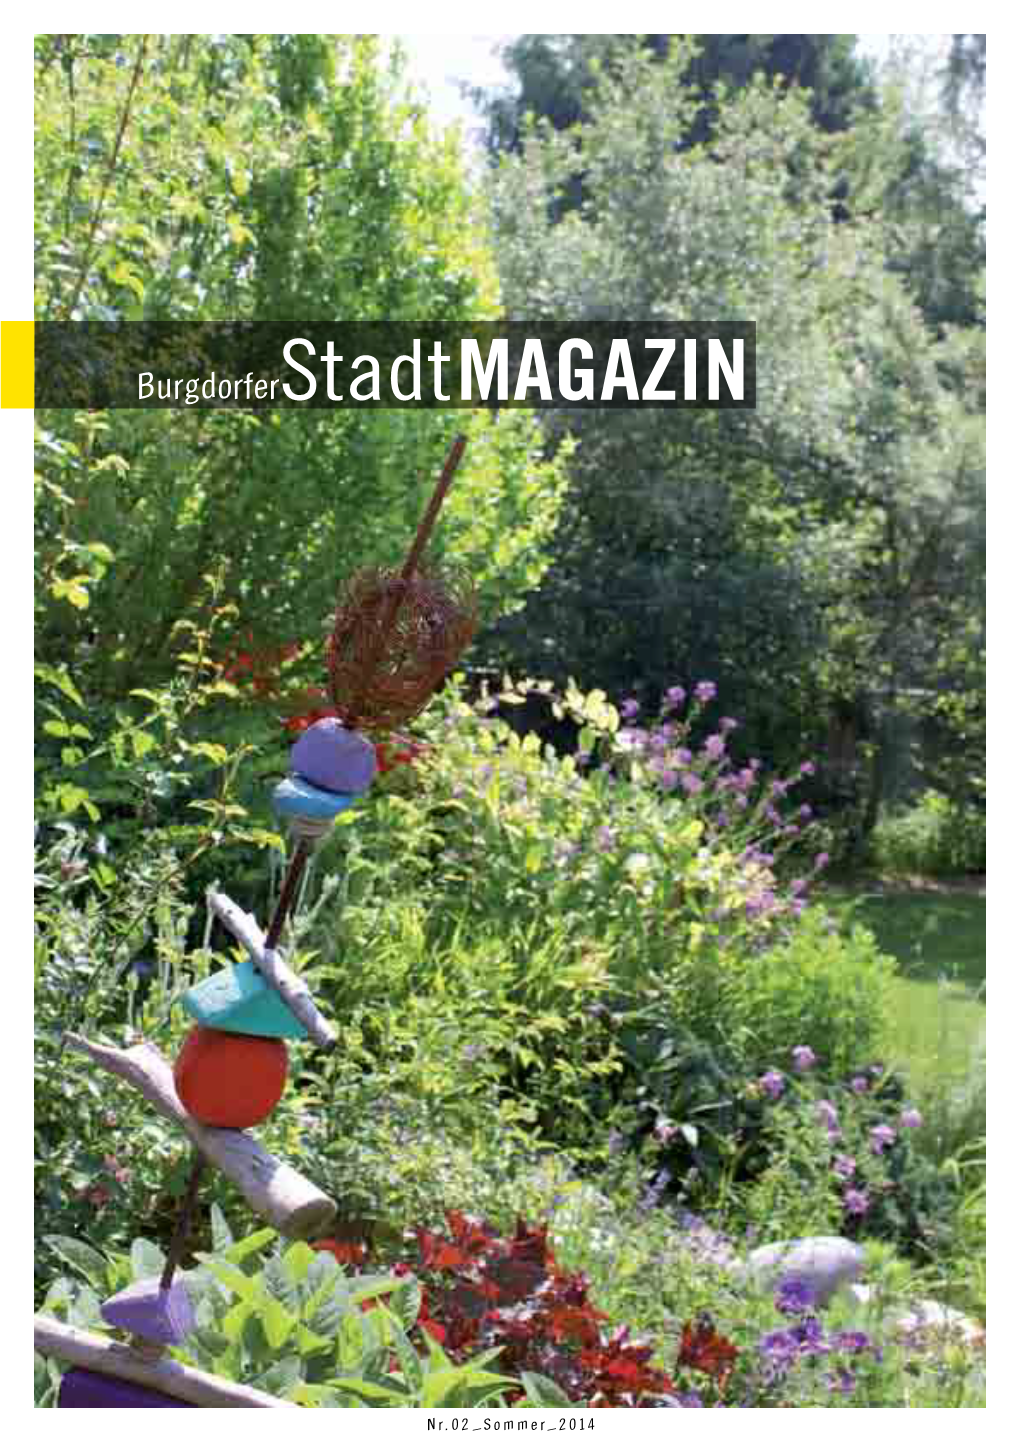 Burgdorferstadtmagazin